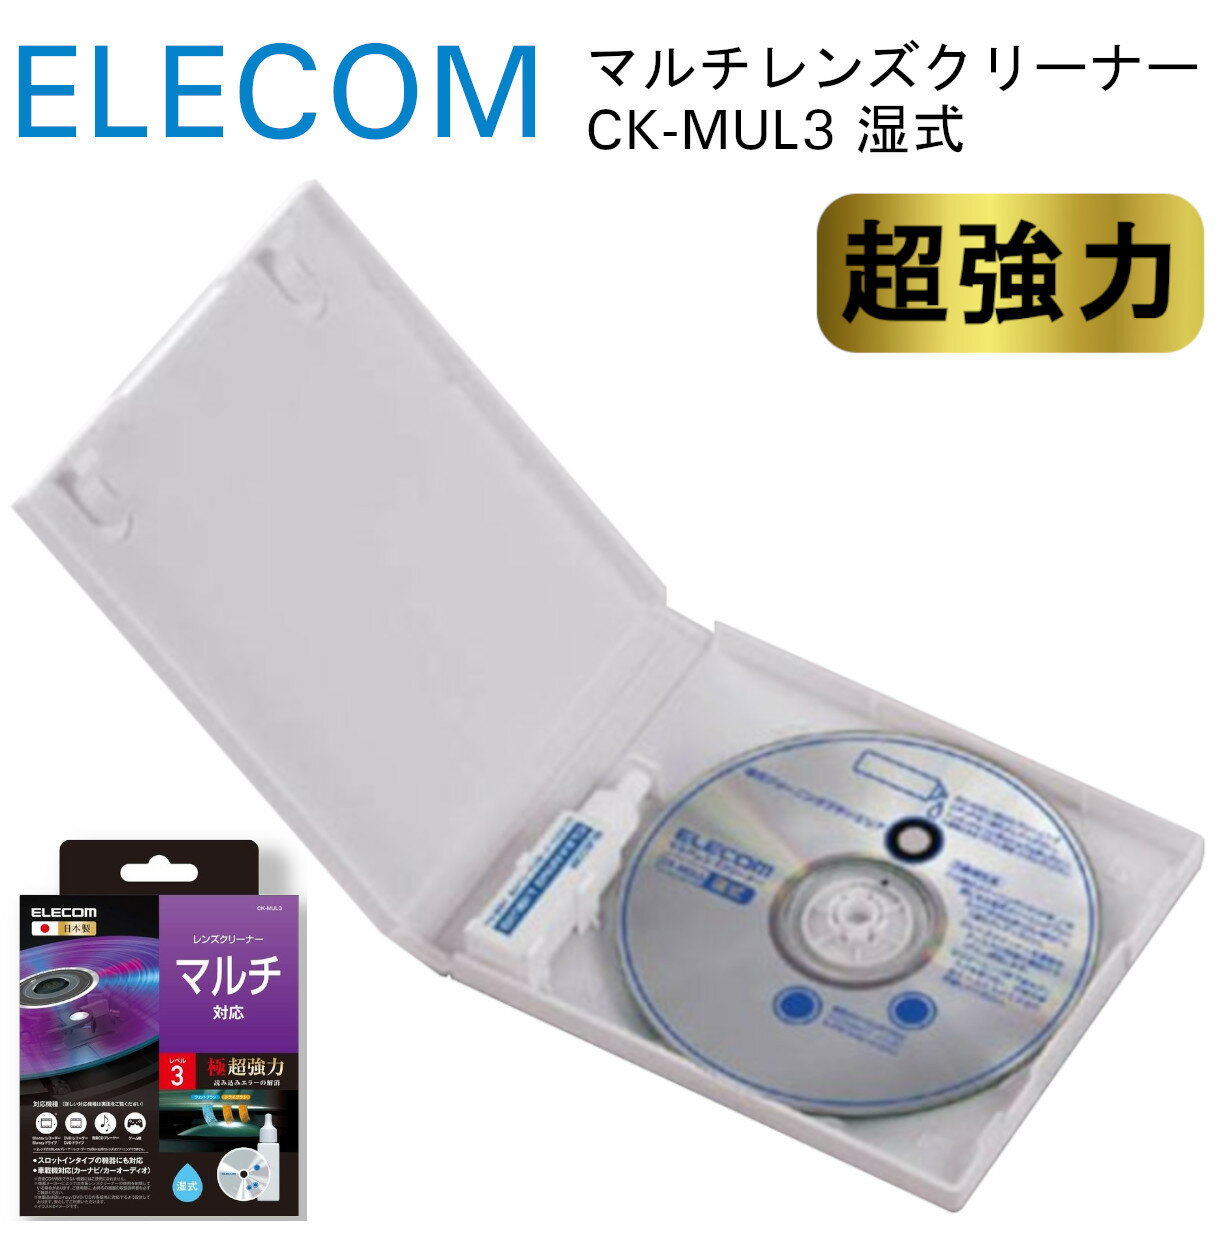 【新品】 エレコム マルチレンズクリーナー 湿式 CD DVD レンズクリーナー ゲーム機 読み込みエラー解消 レベル3 CK-MUL3